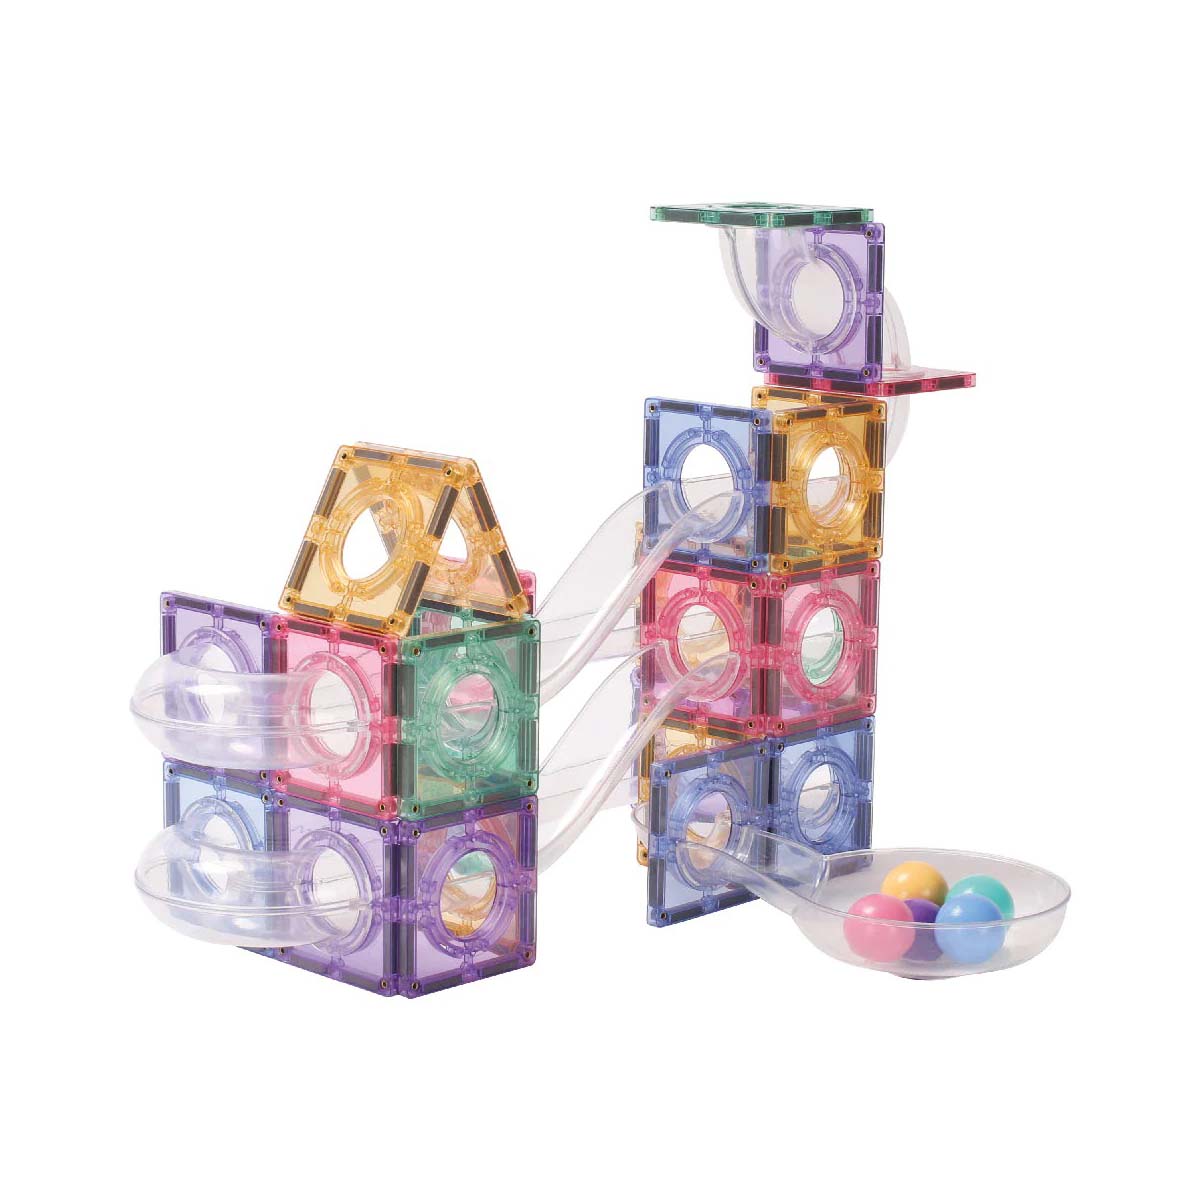 Met de Cleverclixx ball run creative pack pastel knikkerbaan 70 stuks kan jouw kindje urenlang spelen. Dit open einde speelgoed zorgt ervoor dat jouw kindje al zijn creativiteit kwijt kan. VanZus.